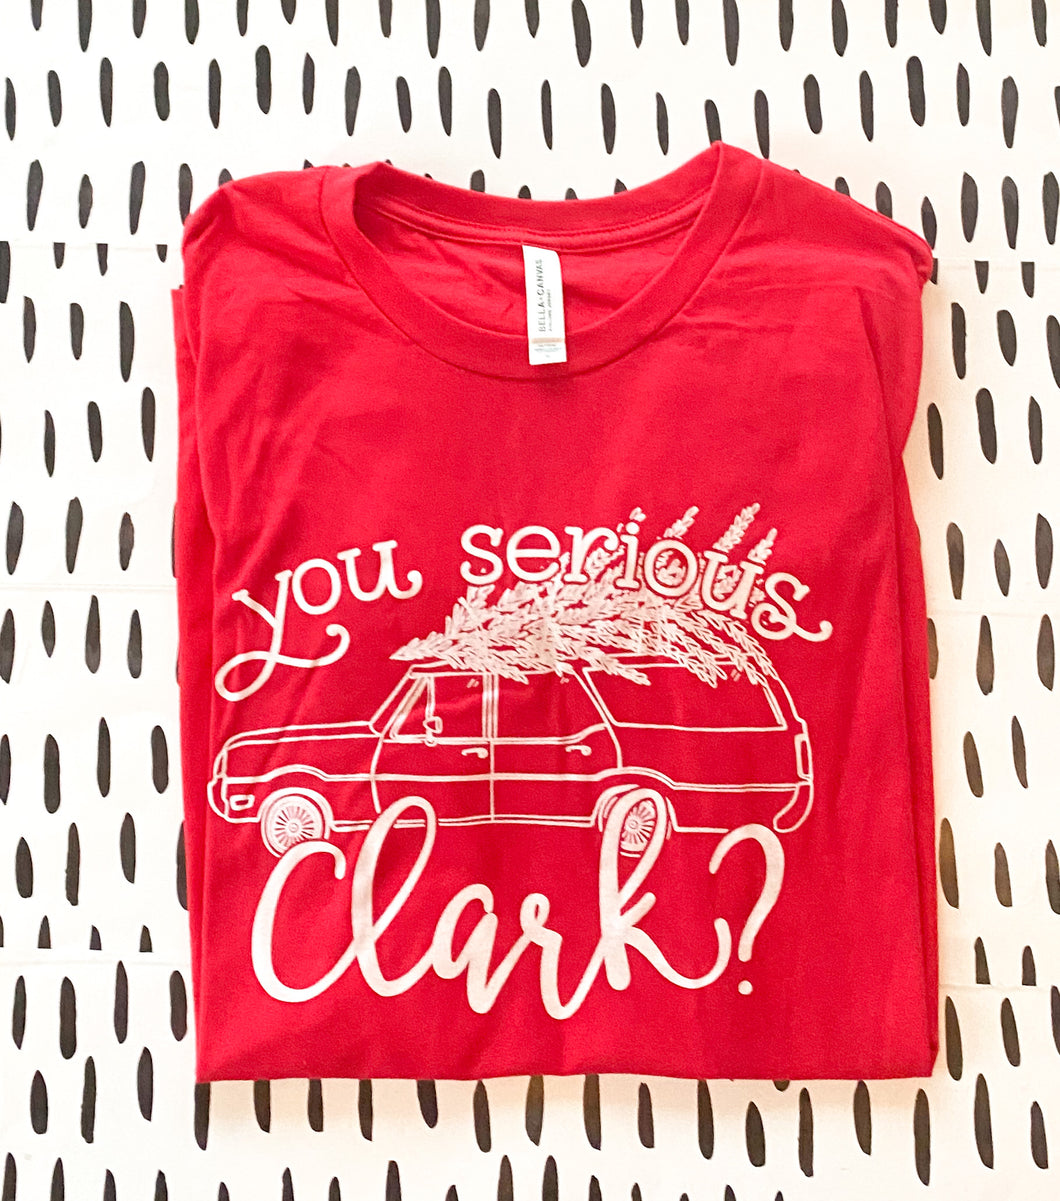 You serious Clark?